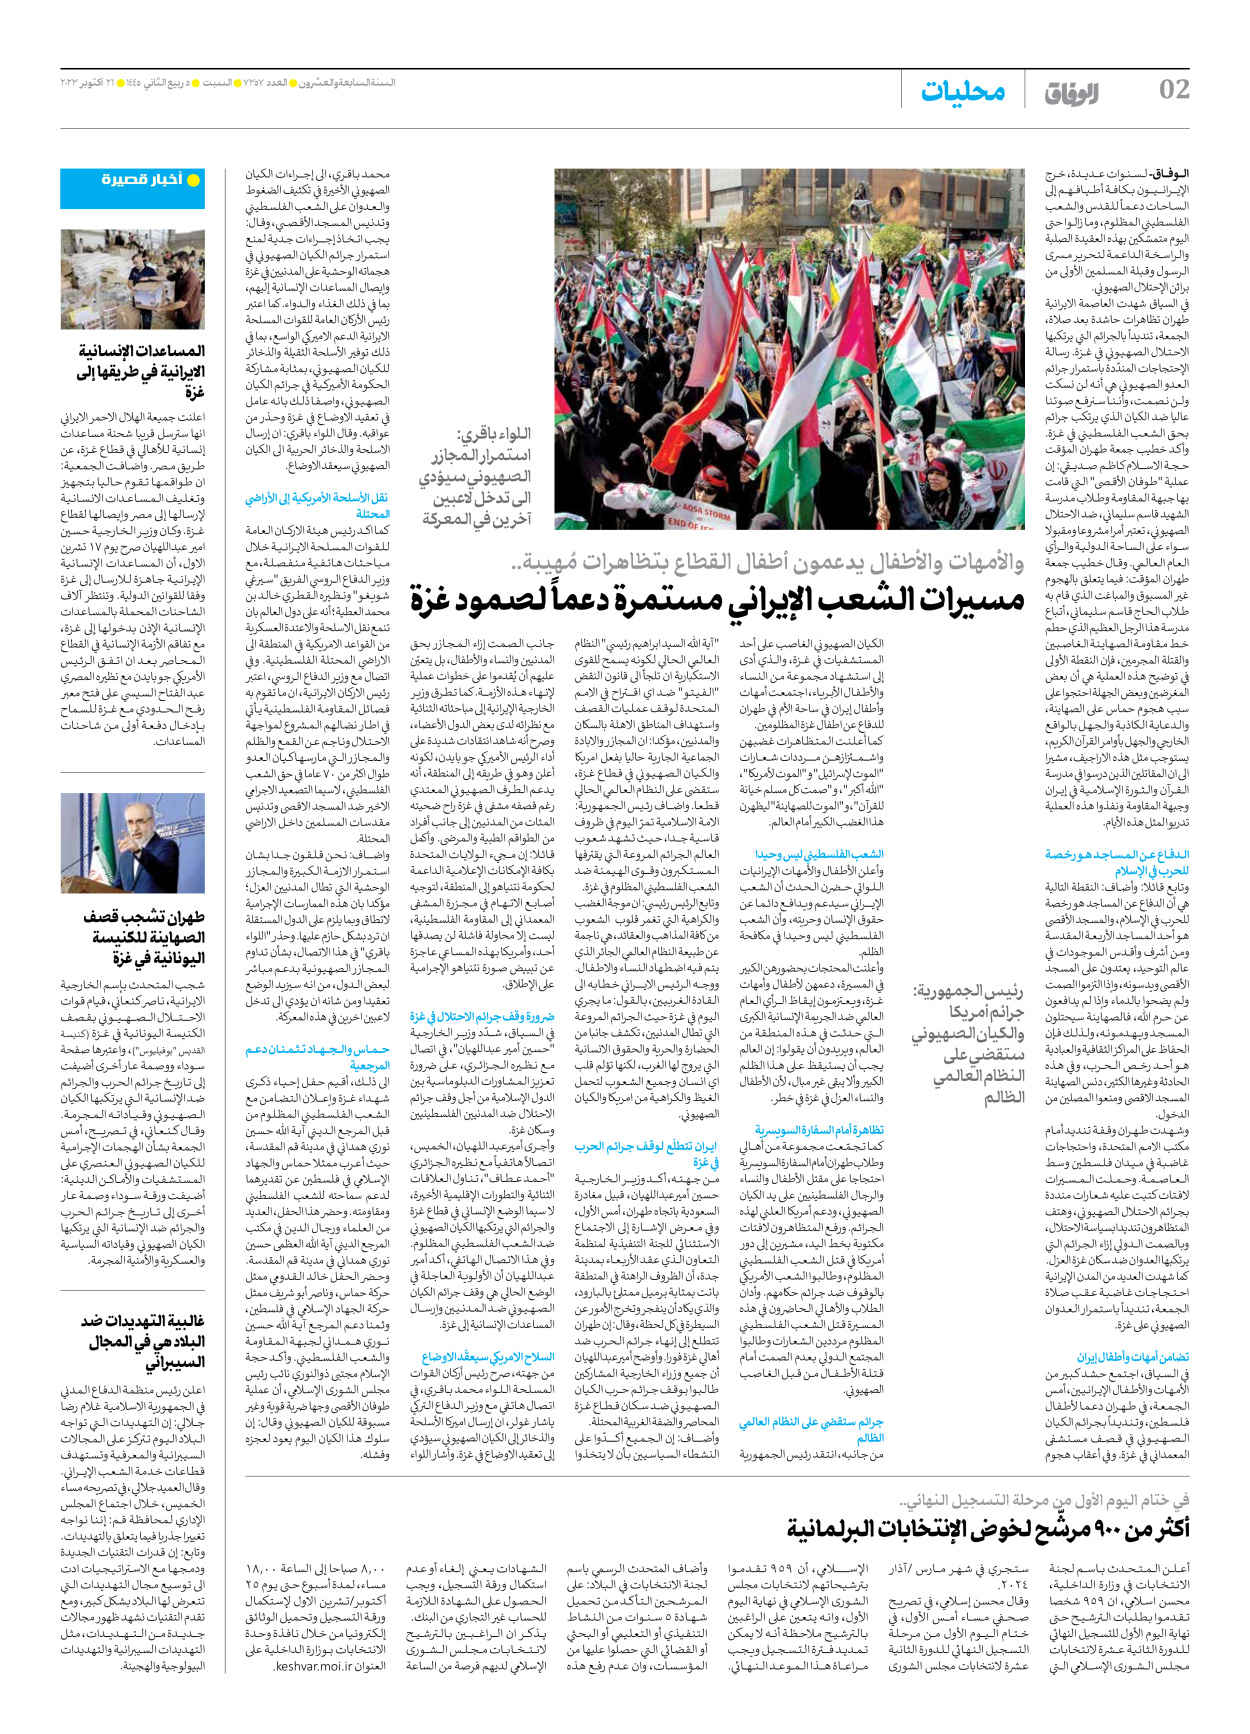 صحیفة ایران الدولیة الوفاق - العدد سبعة آلاف وثلاثمائة وسبعة وخمسون - ٢١ أكتوبر ٢٠٢٣ - الصفحة ۲